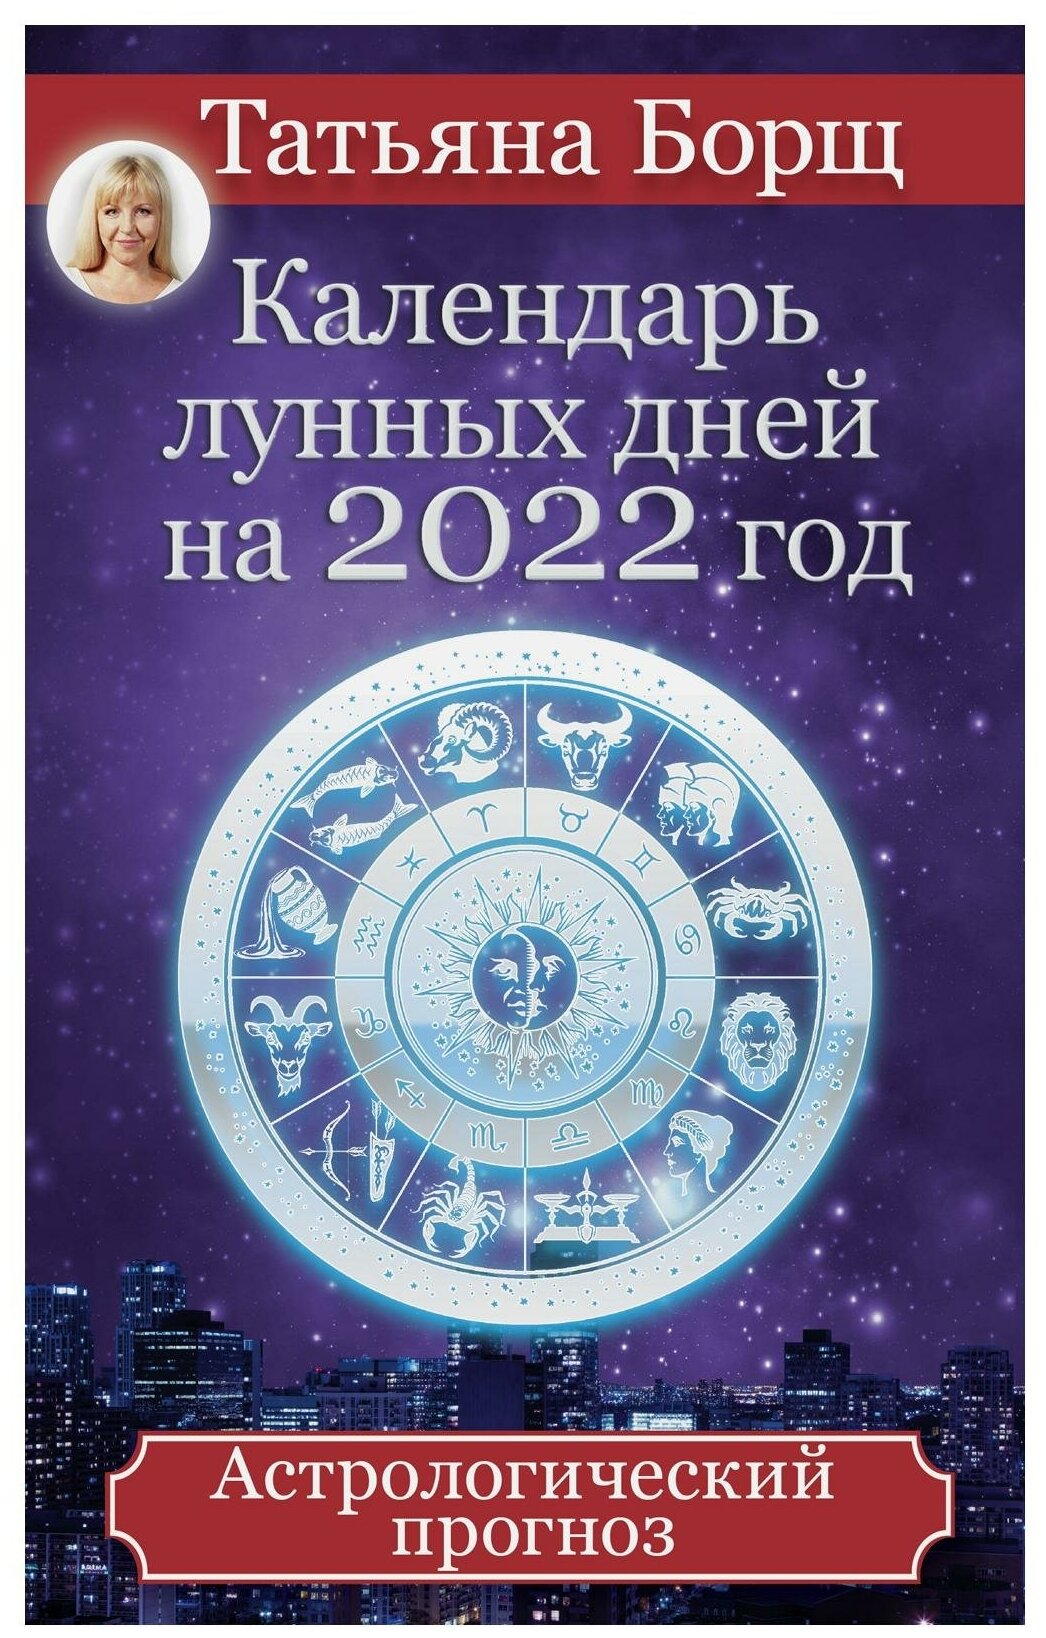 Календарь лунных дней на 2022 год: астрологический прогноз - фото №1